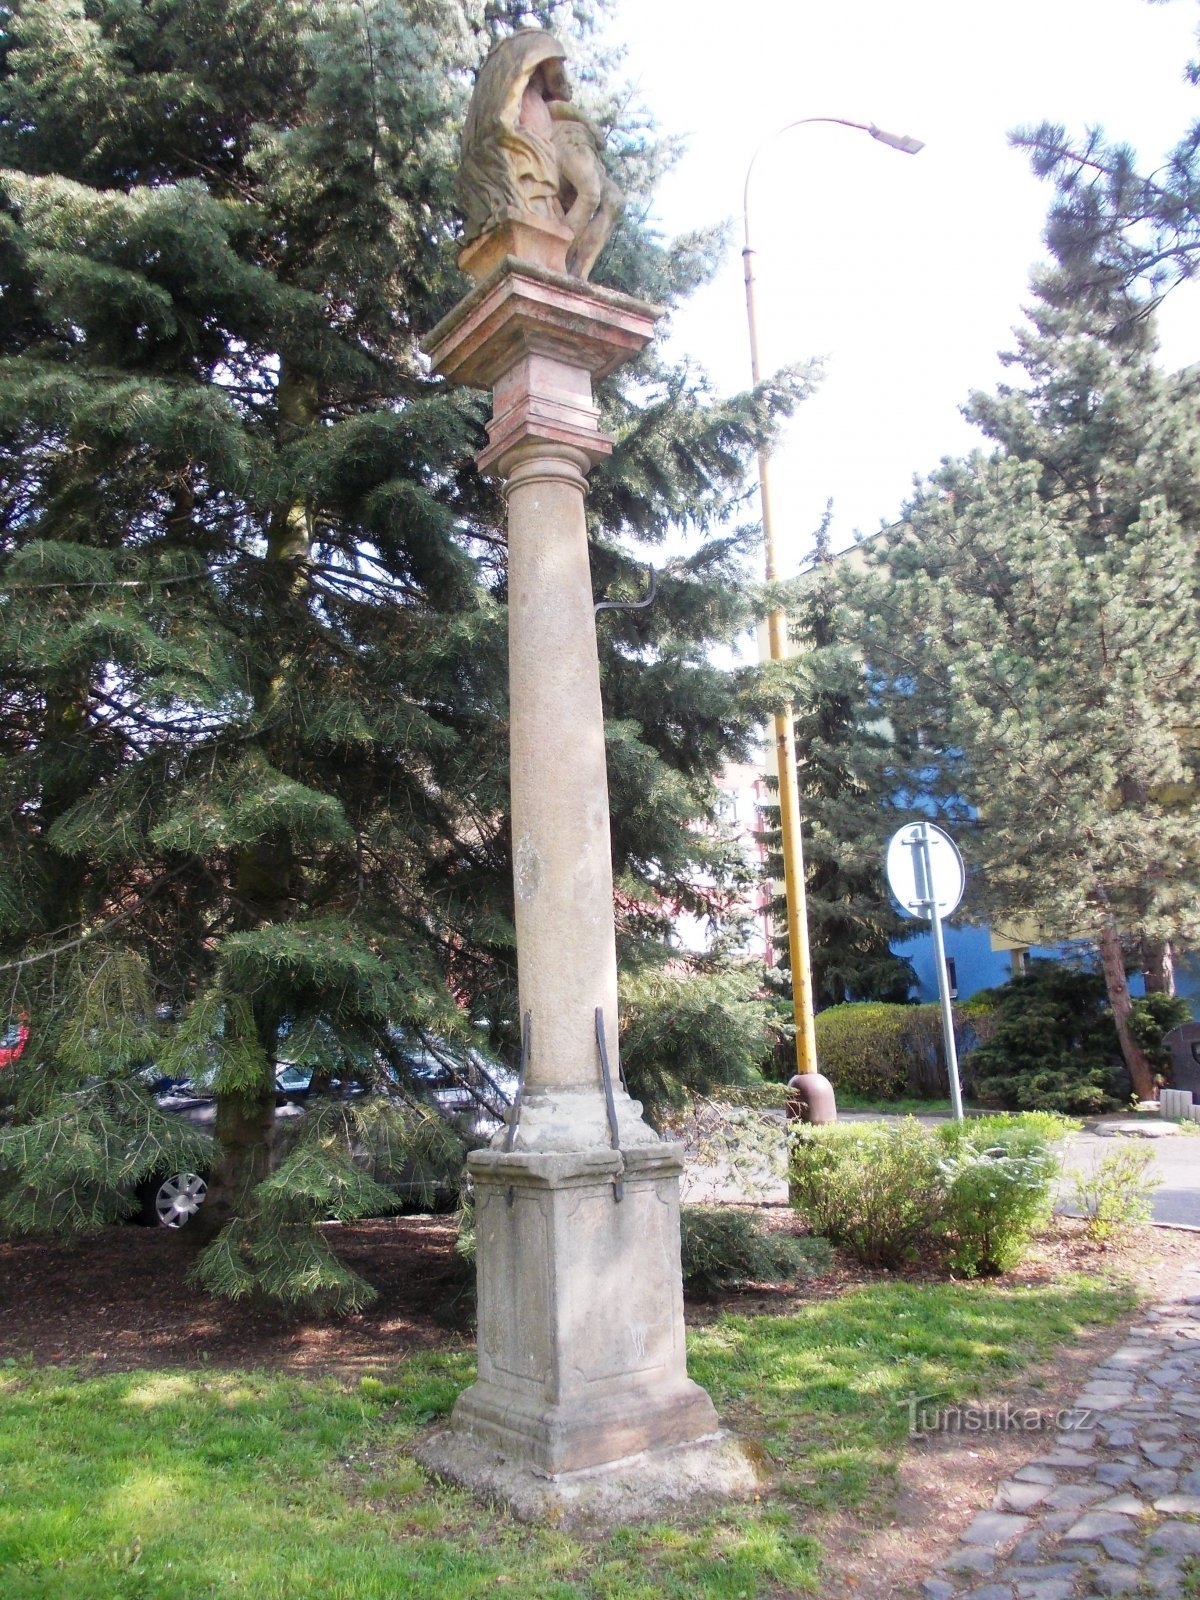 o coloană cu o statuie Pieta